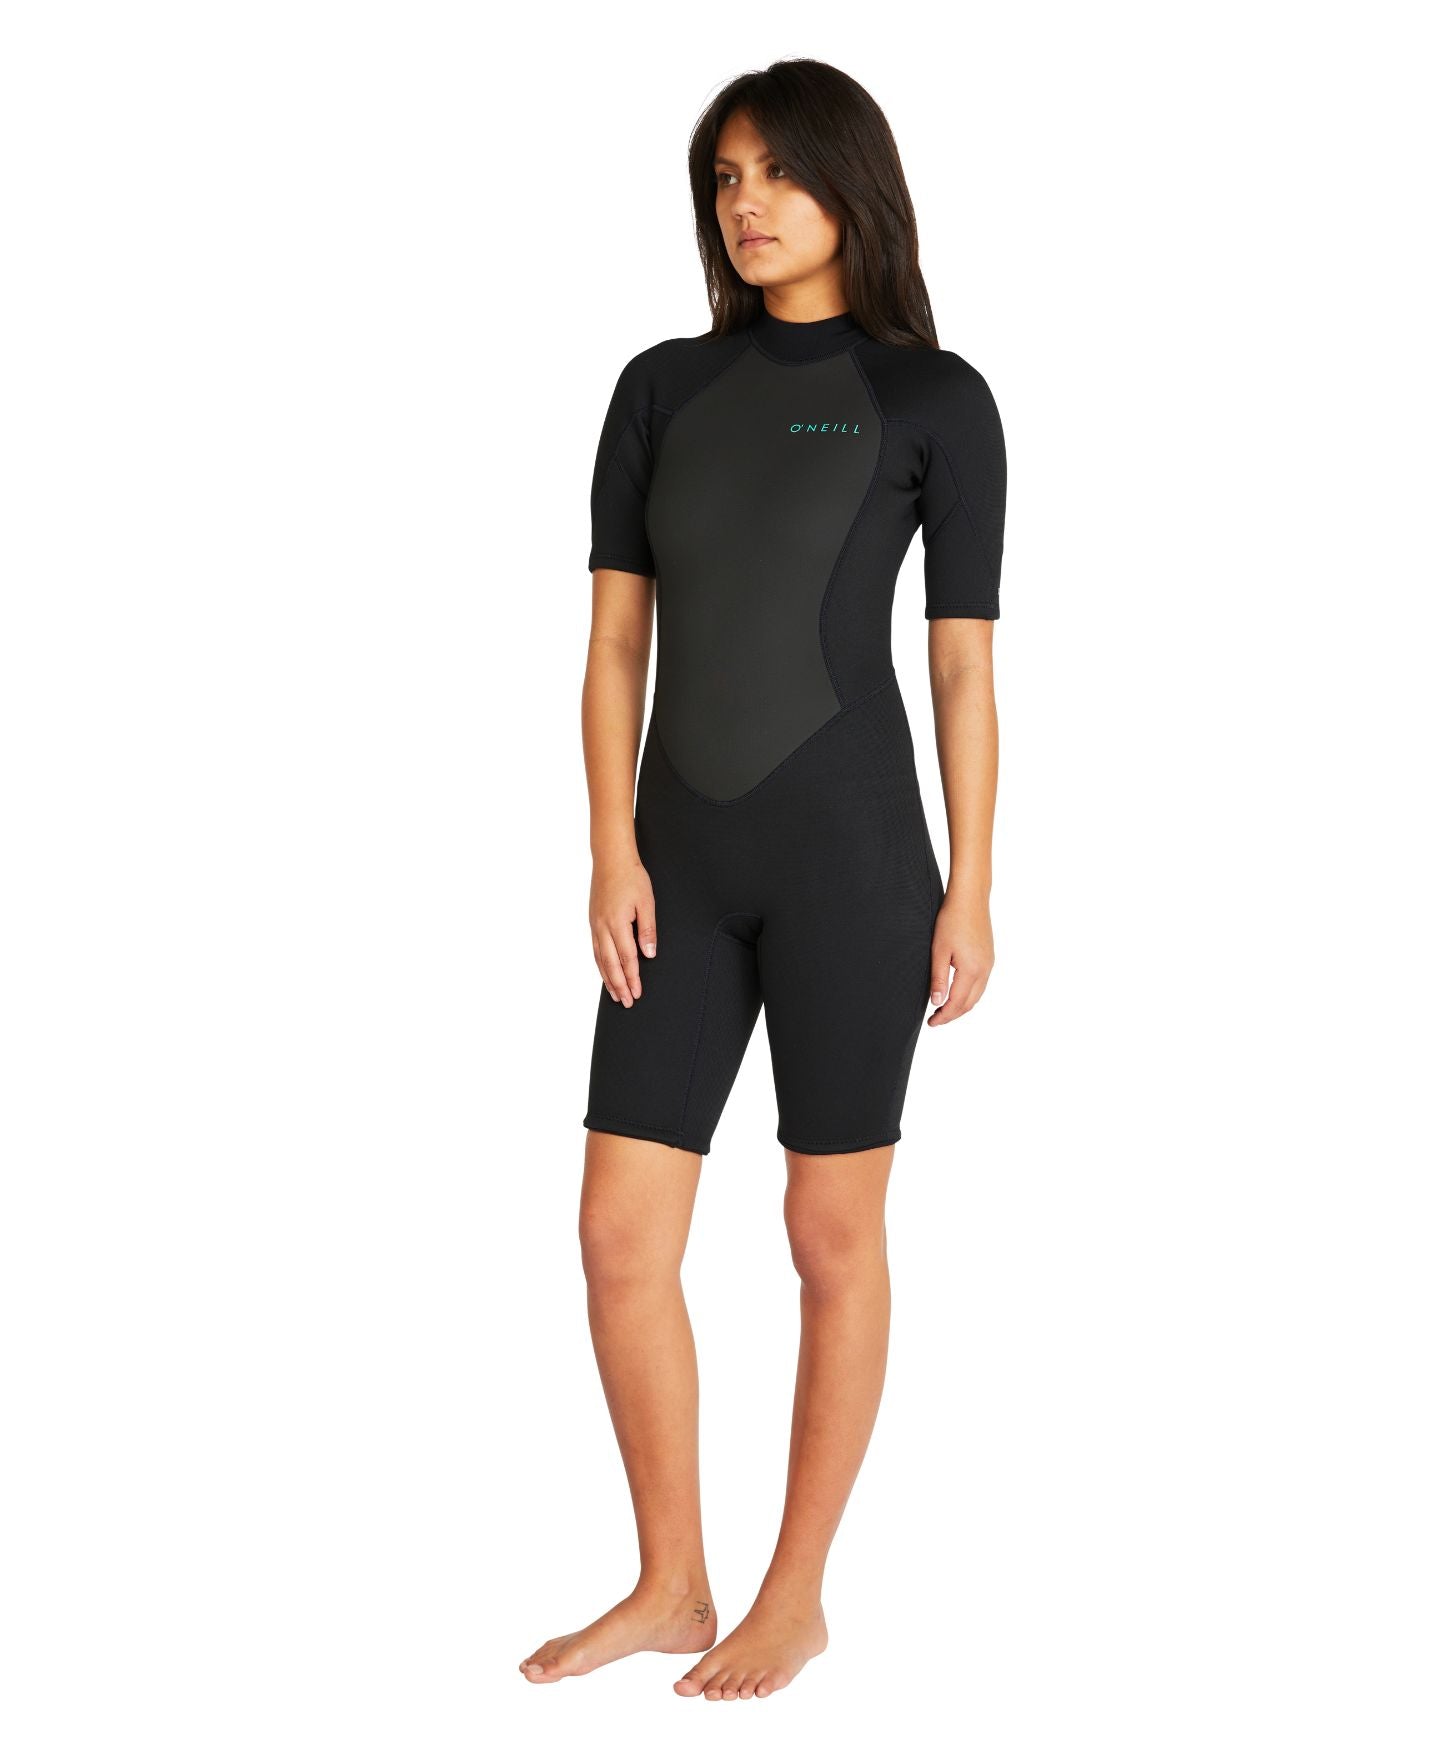 Women's Factor Back Zip Spring Suit 2mm Wetsuit - Black